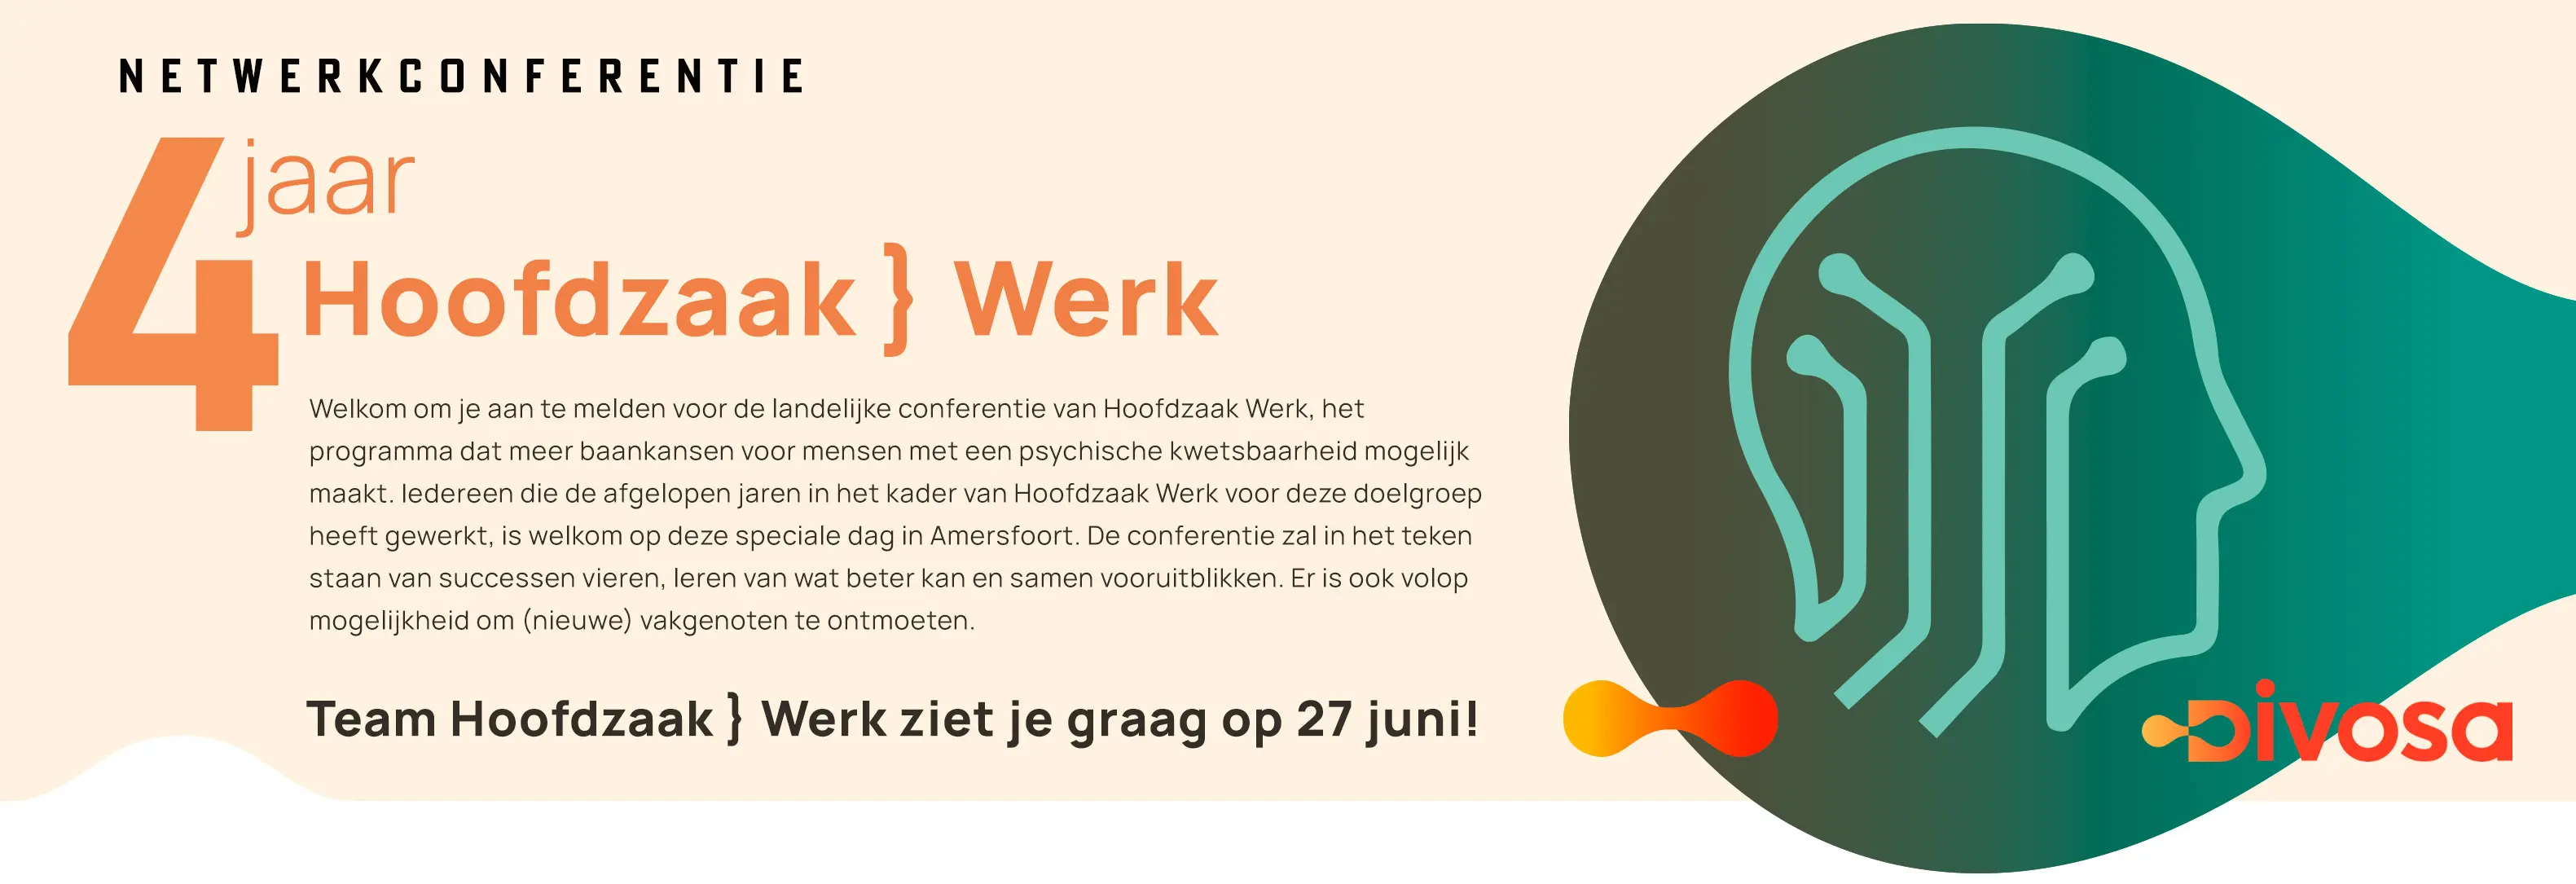 Netwerkconferentie 4 jaar Hoofdzaak Werk Banner